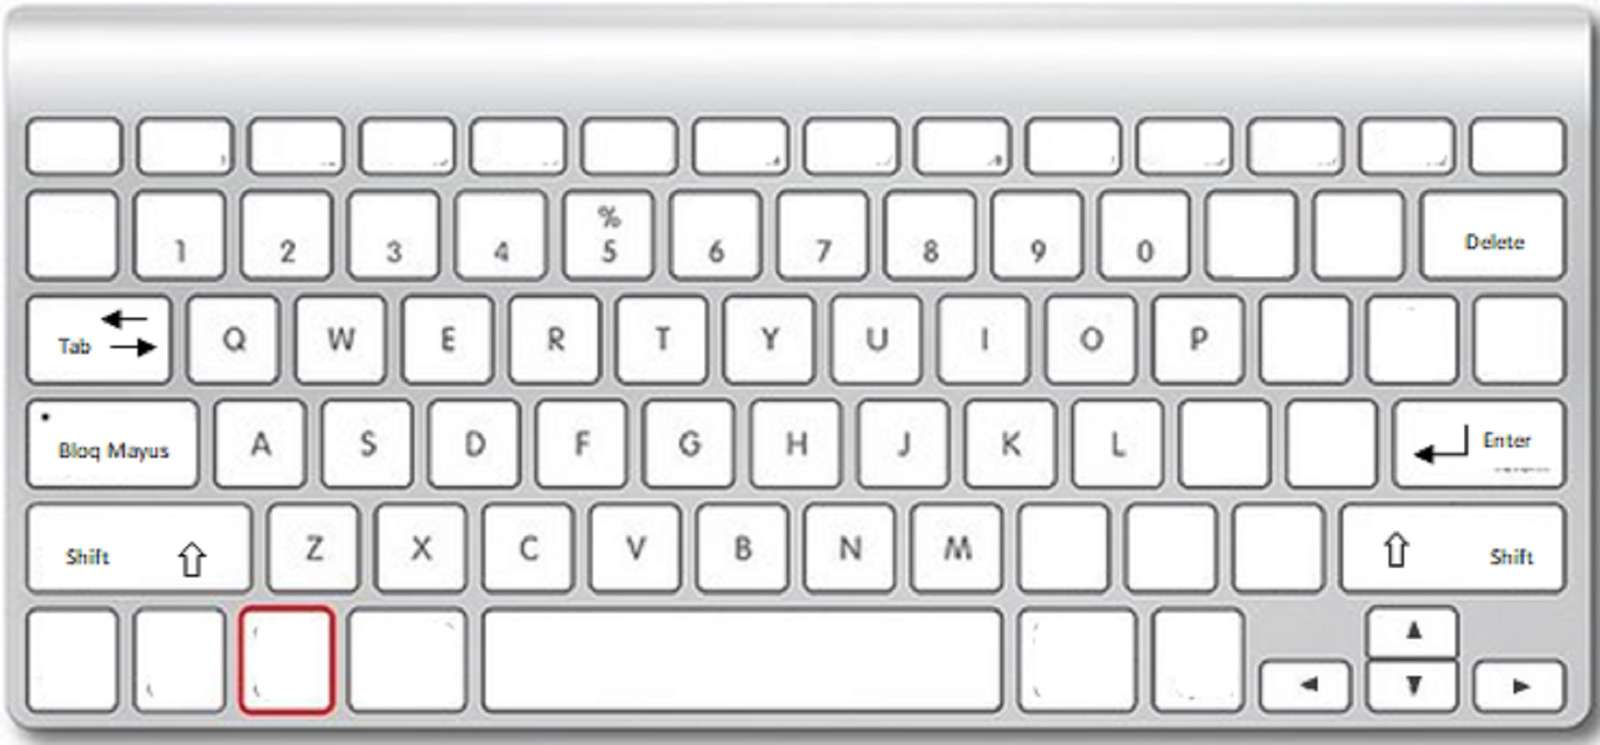 teclado de una computadora rompecabezas en línea